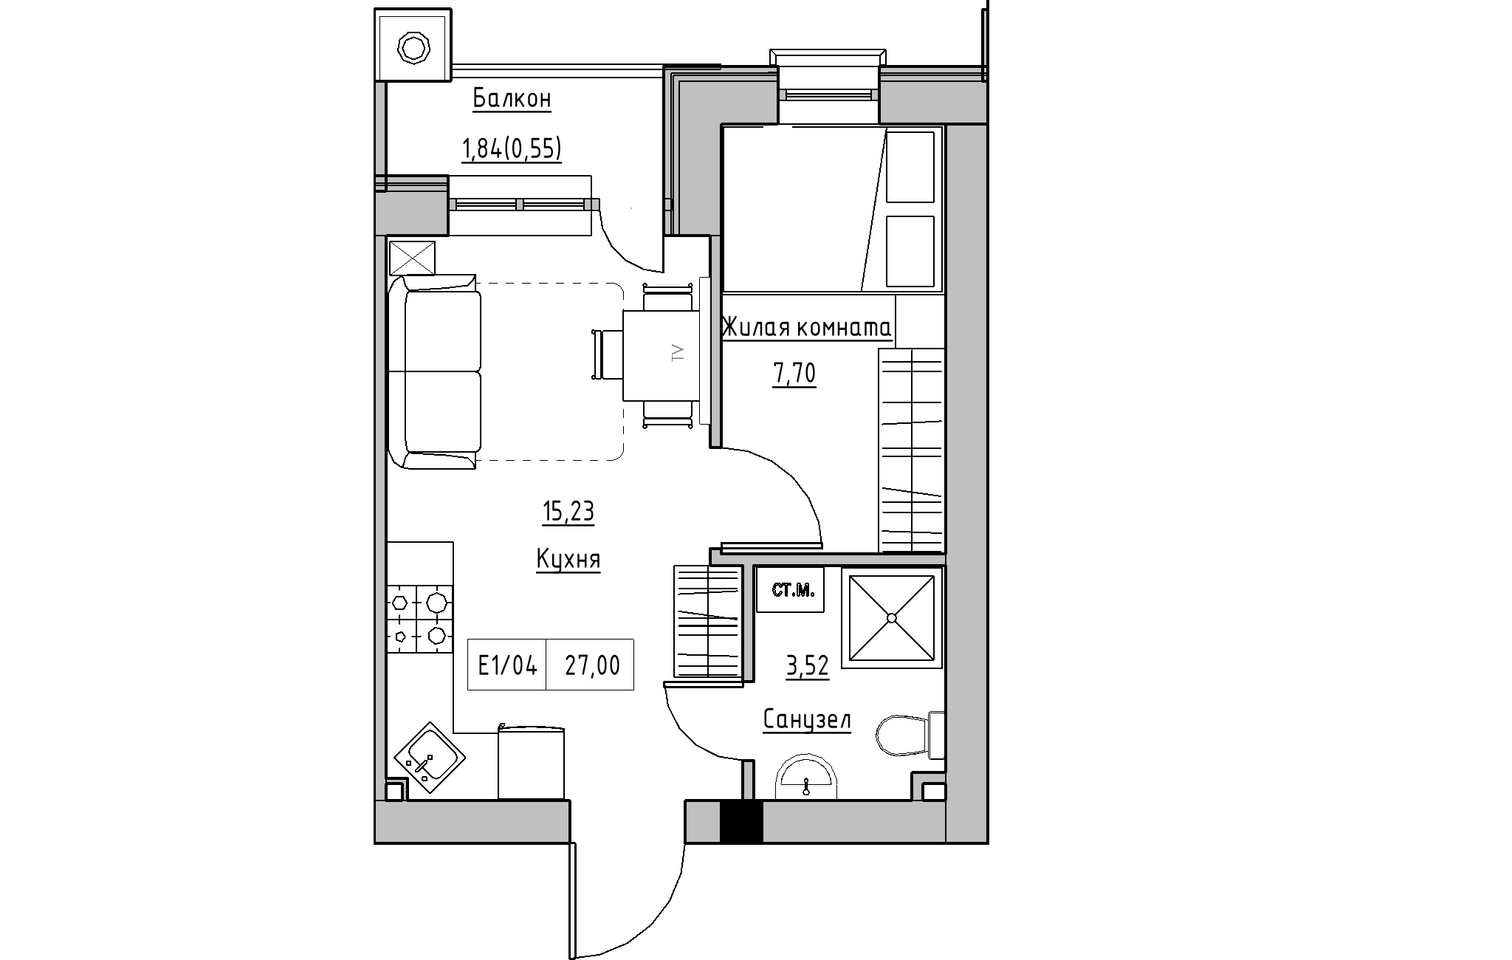 Планировка 1-к квартира площей 27м2, KS-010-05/0008.